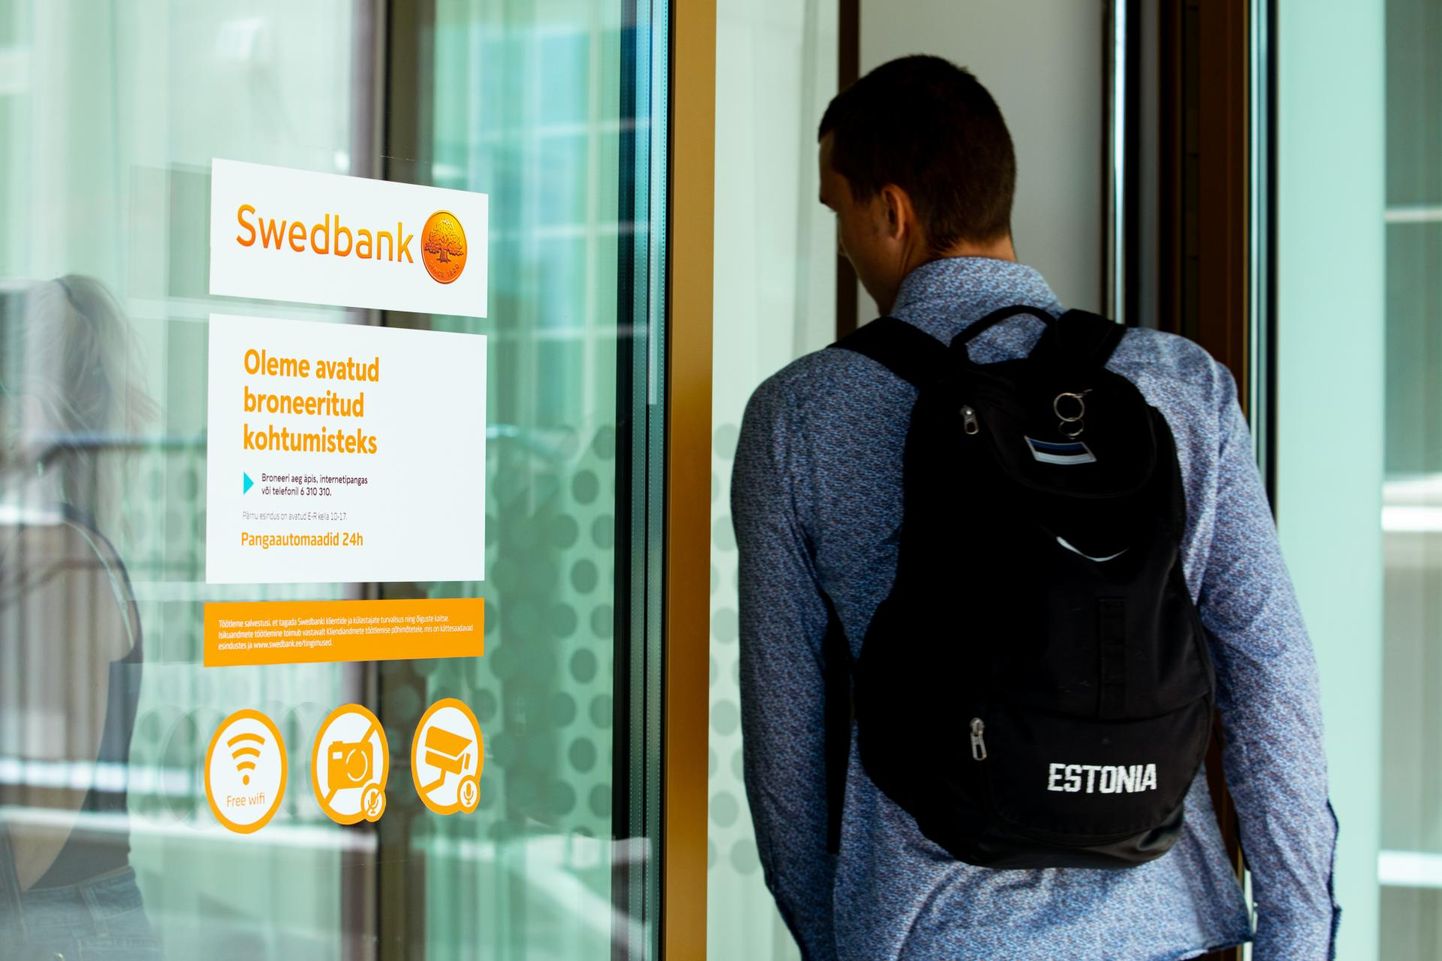 Конторы Swedbank открыты только для клиентов, сделавших предварительное бронирование, остальные остаются за дверью.